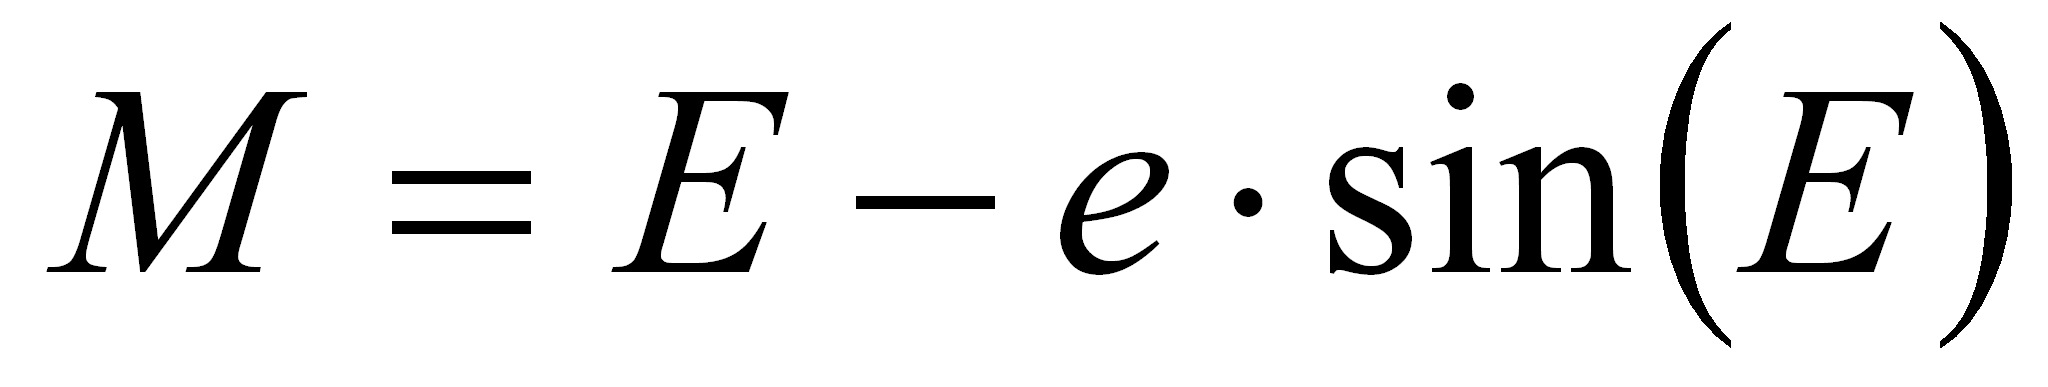 Kepler's Equation